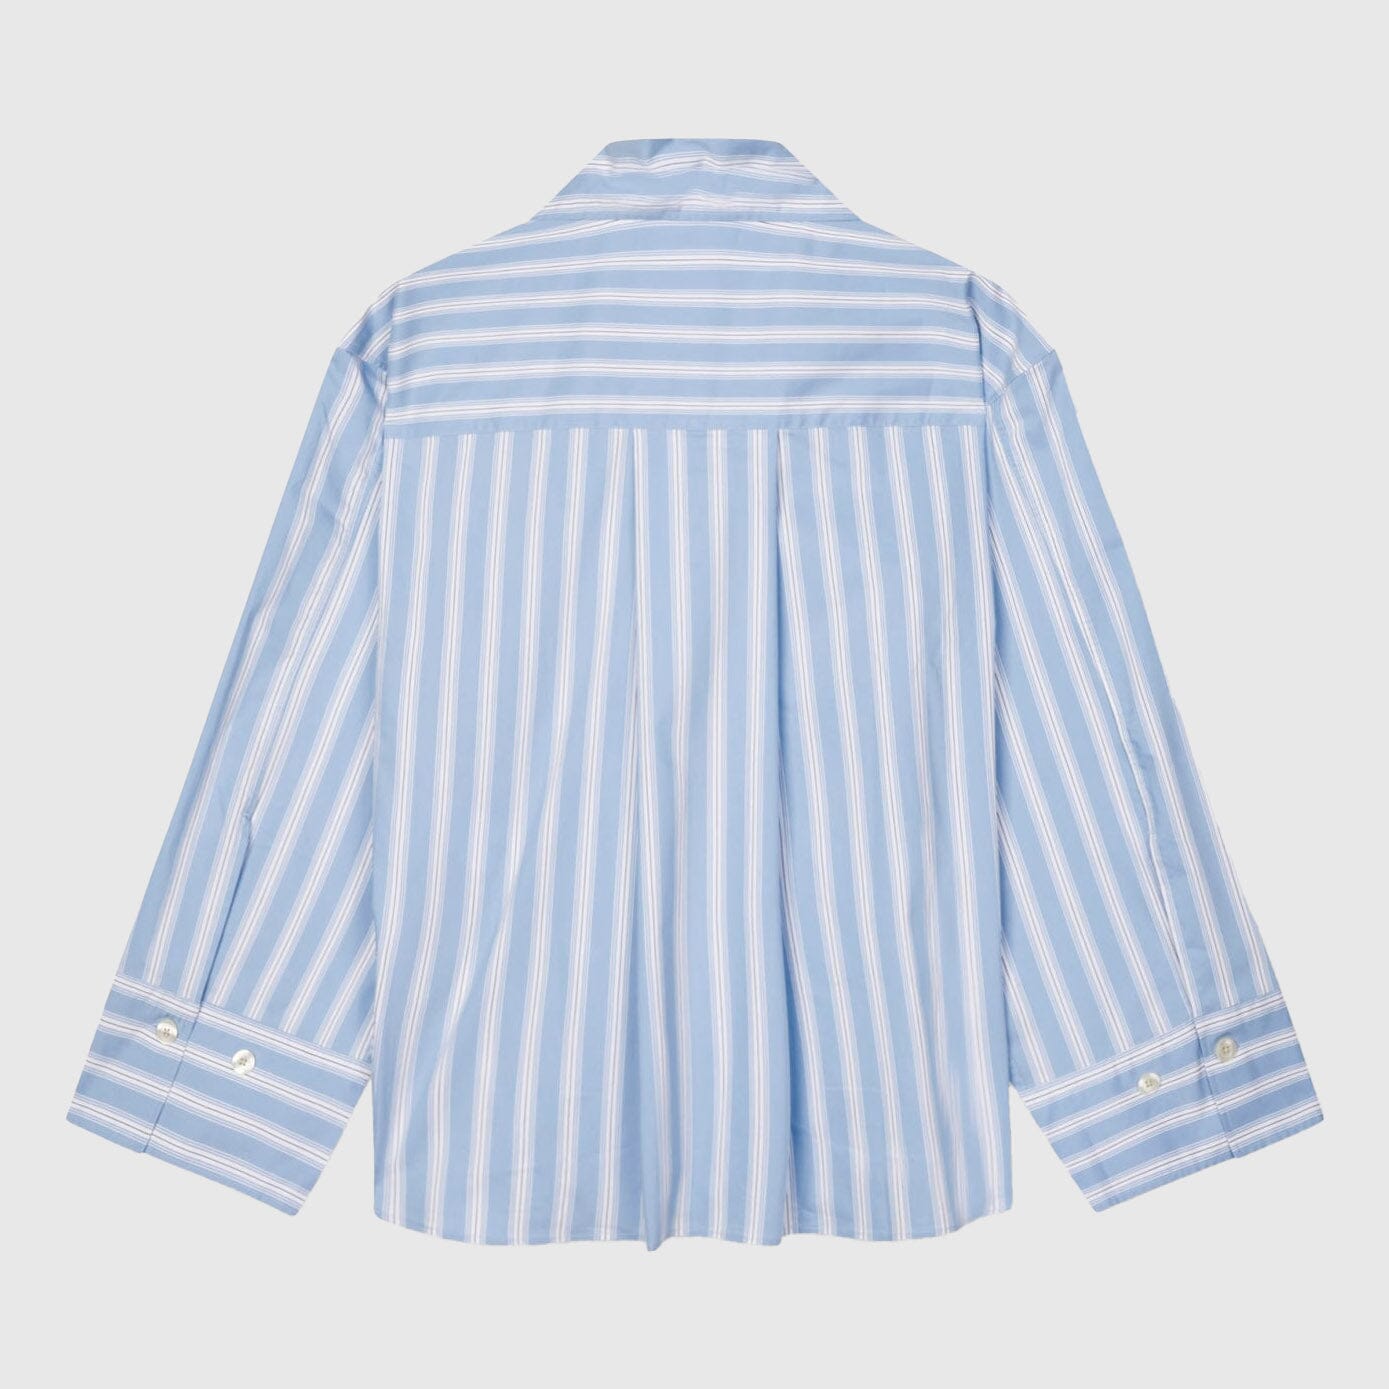 Libertine-Libertine Mercy Shirt - Light Blue Stripe Shirt Libertine-Libertine 